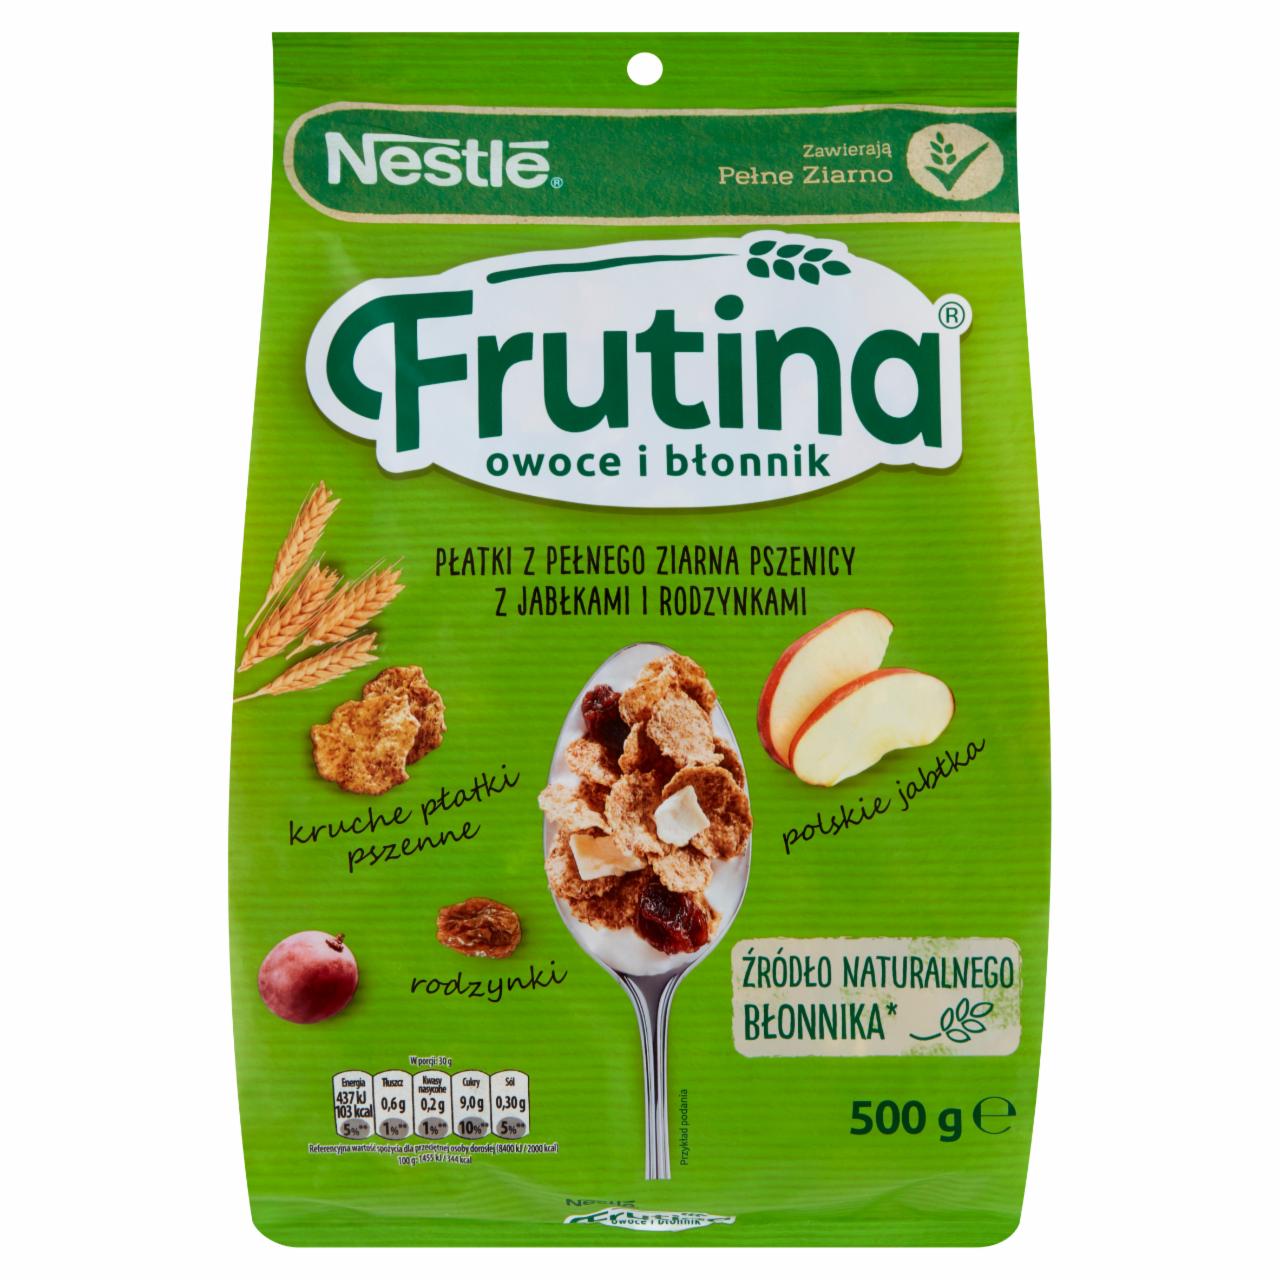 Zdjęcia - Frutina Owoce i Błonnik Płatki z pełnego ziarna pszenicy z jabłkami i rodzynkami Nestlé